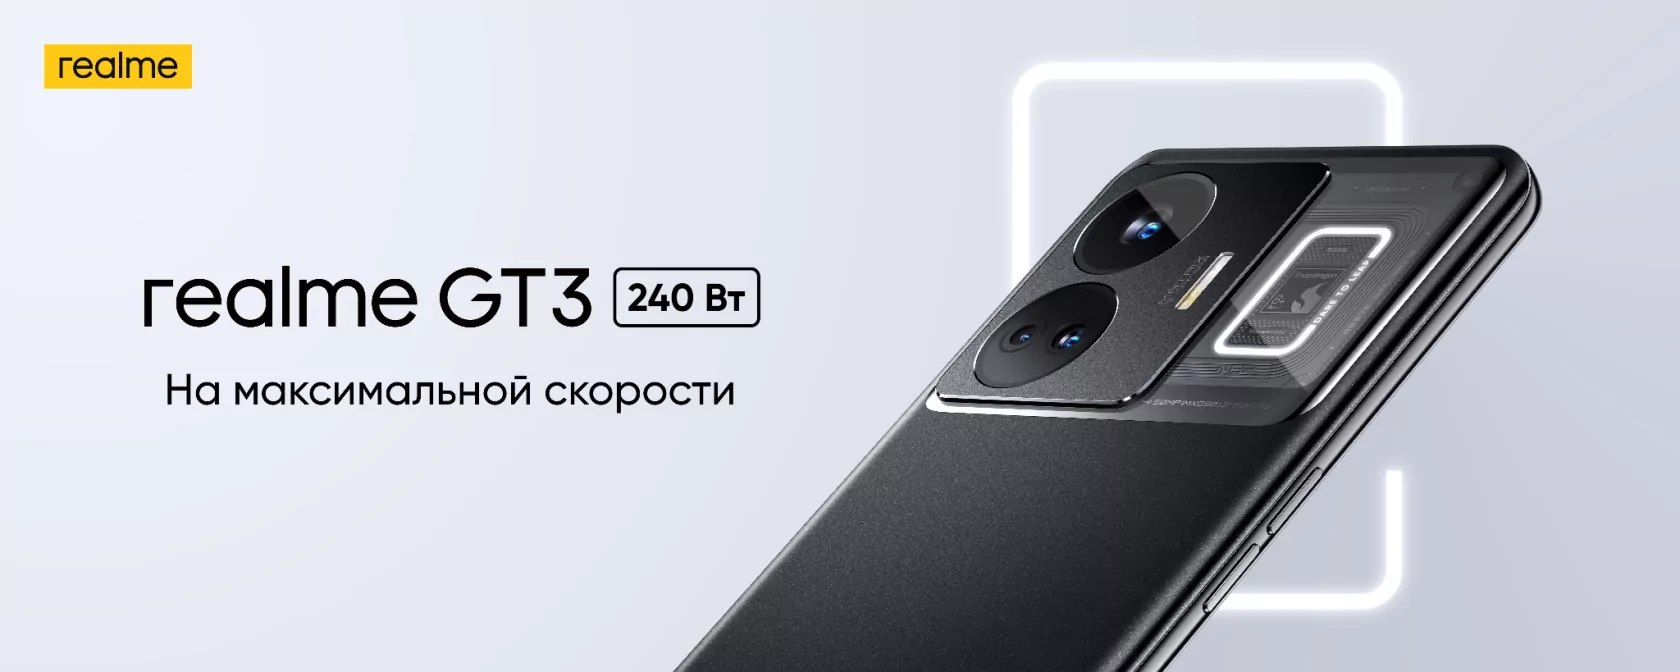 От 0% до 100% за 10 минут: в Россию приедет Realme GT3 с зарядкой на 240 Вт